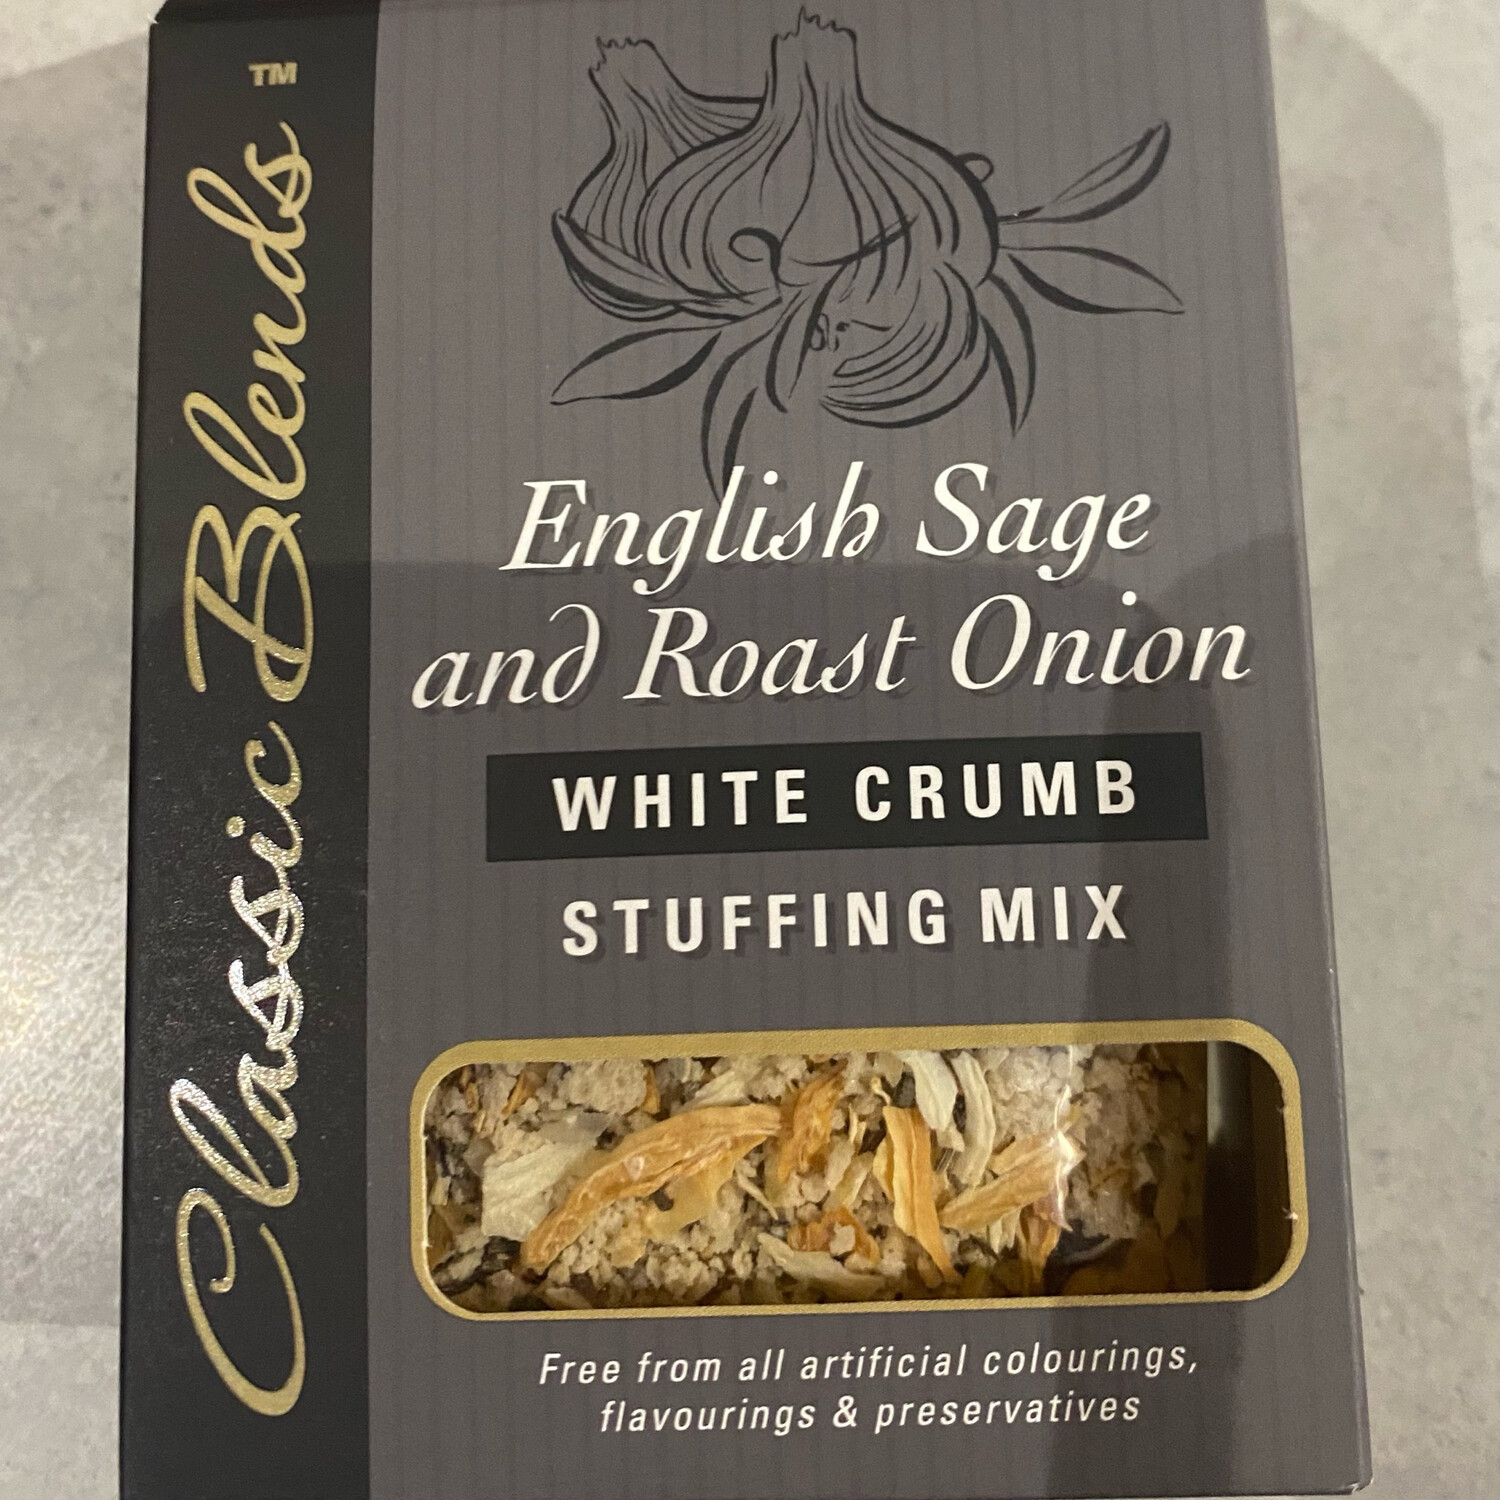 English Sage & Roast Onion white crumbs stuffing mix